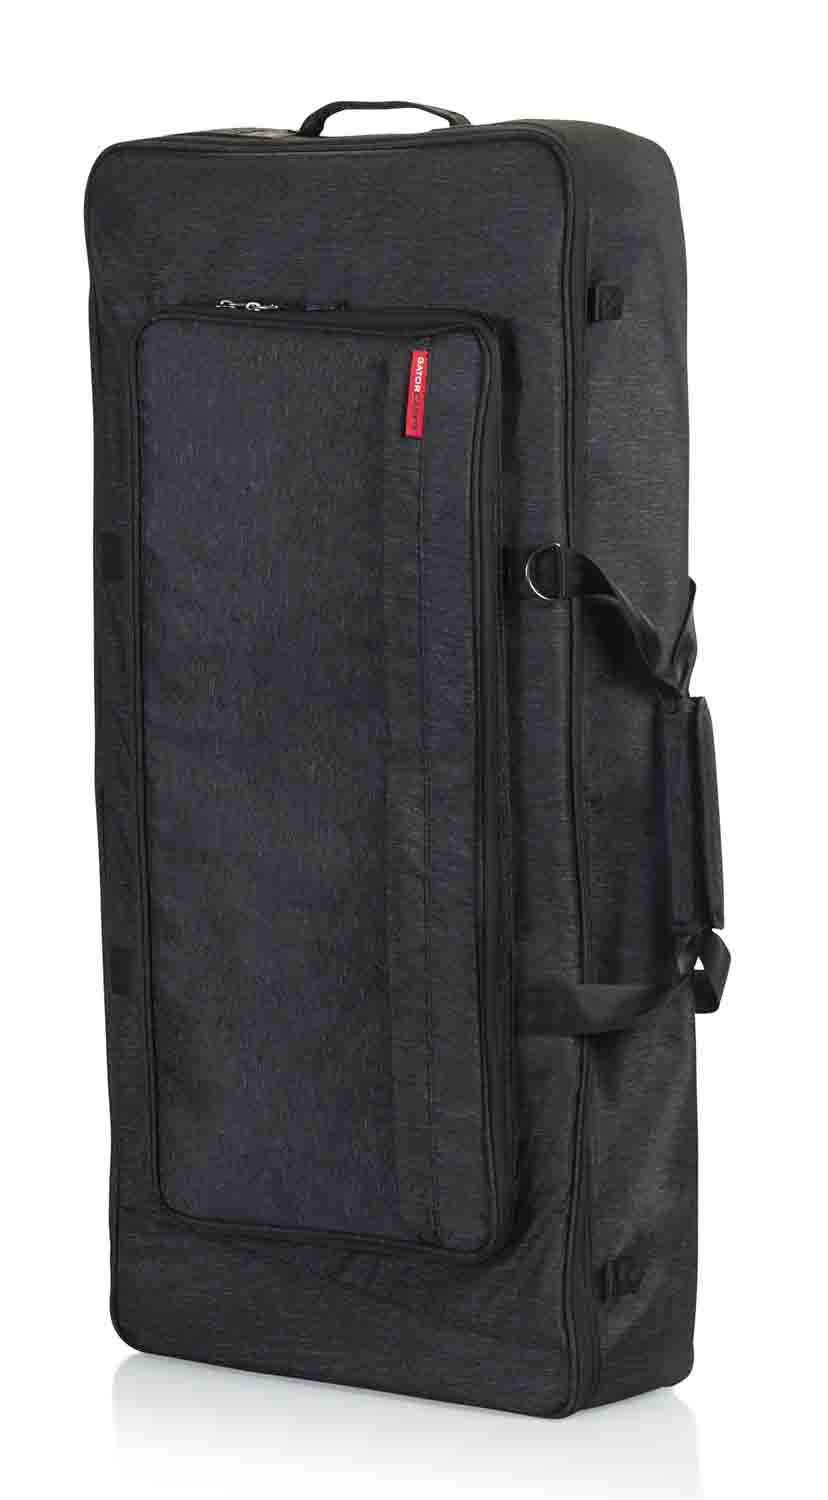 Gator Cases GTK61-BLK Transit Series Protective Gig Bag for 61-Note Keyboards - Hollywood DJ